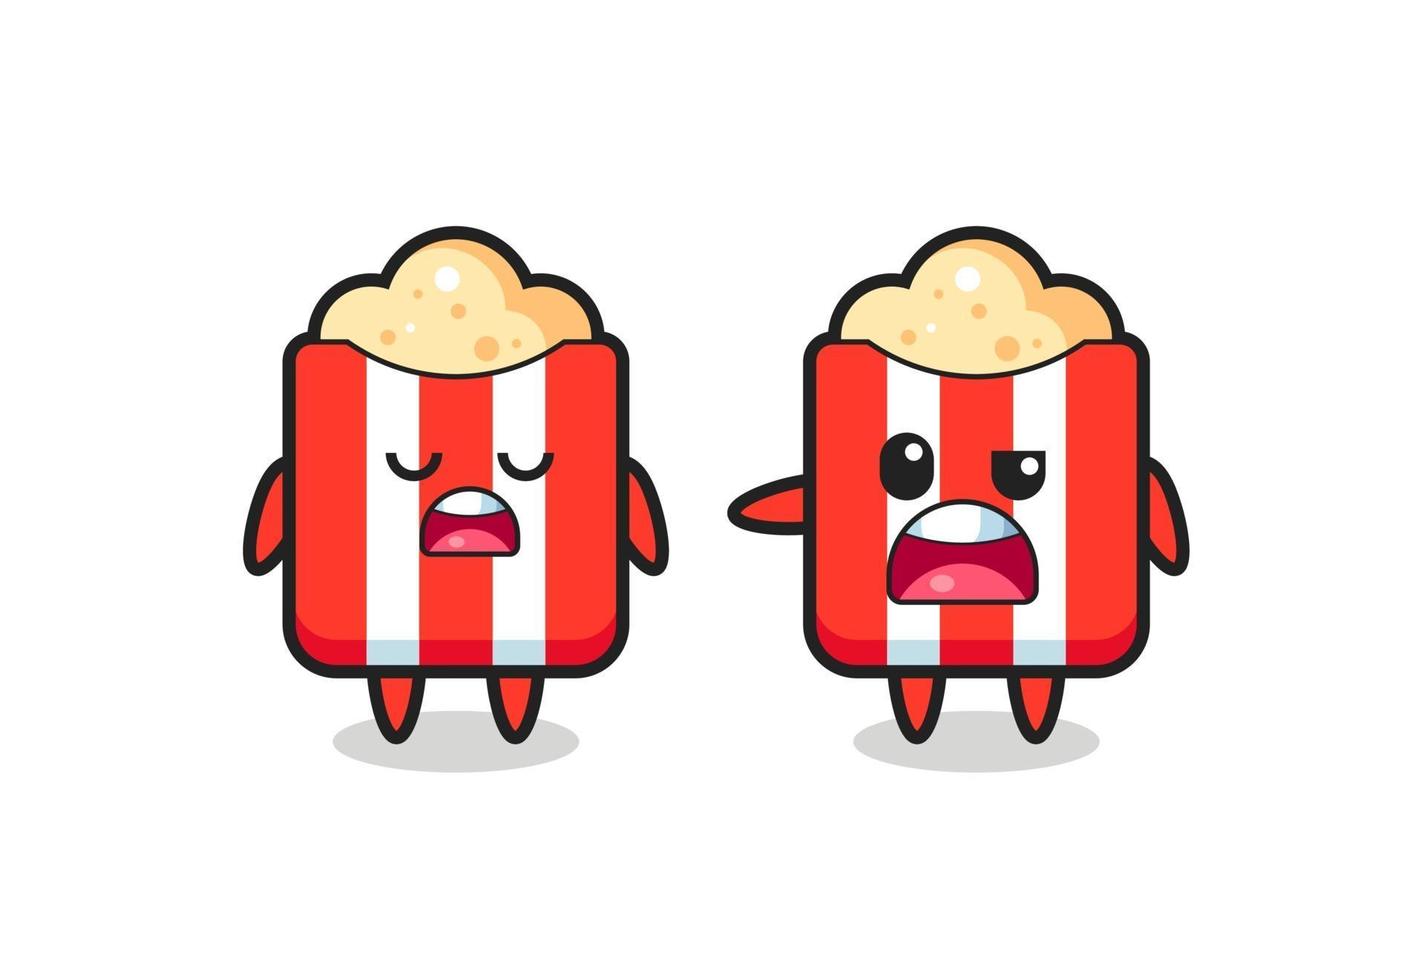 illustrazione della discussione tra due simpatici personaggi di popcorn vettore